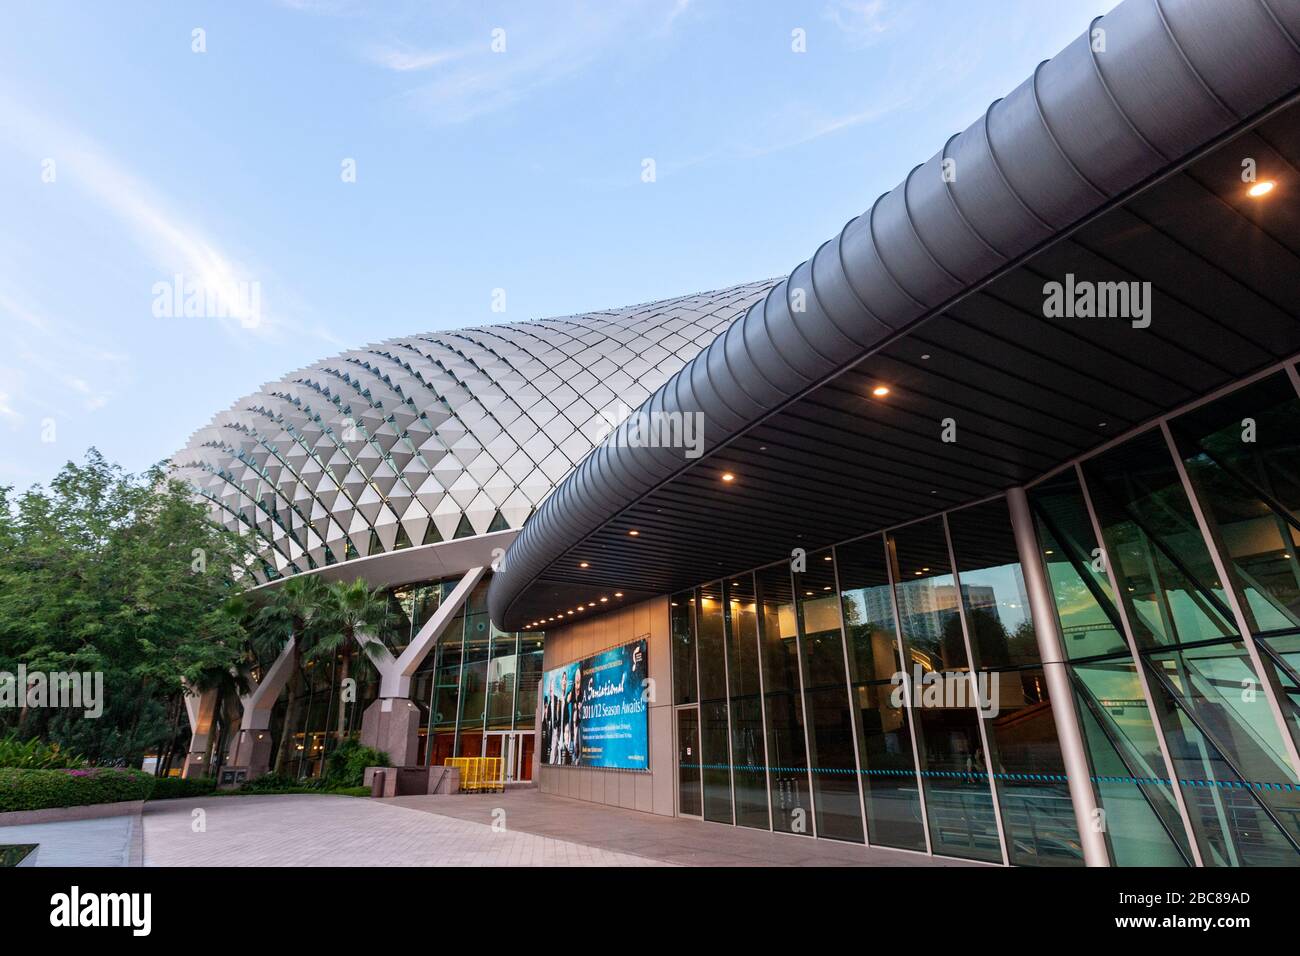 Entrada a Esplanade - teatros en la Bahía, Singapur Foto de stock